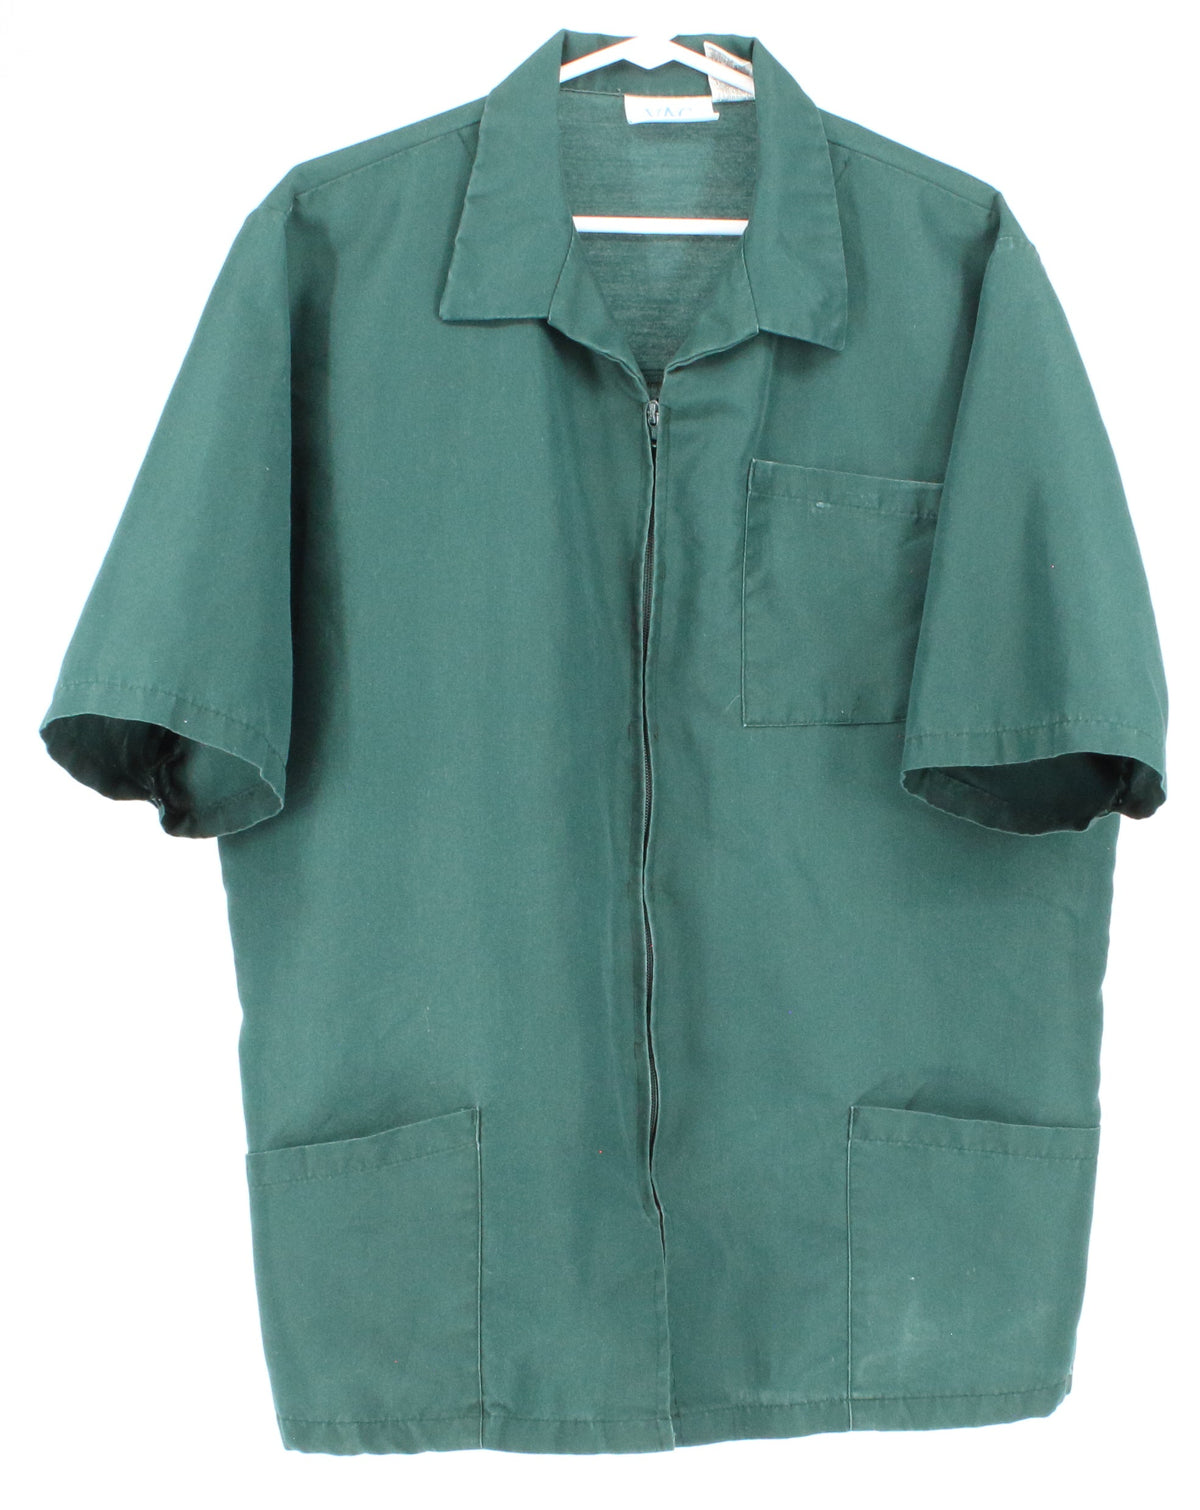 VAC Veterinary Apparel Company Dark Green Zip Up Multi Pocket Short Sleeve Shirt